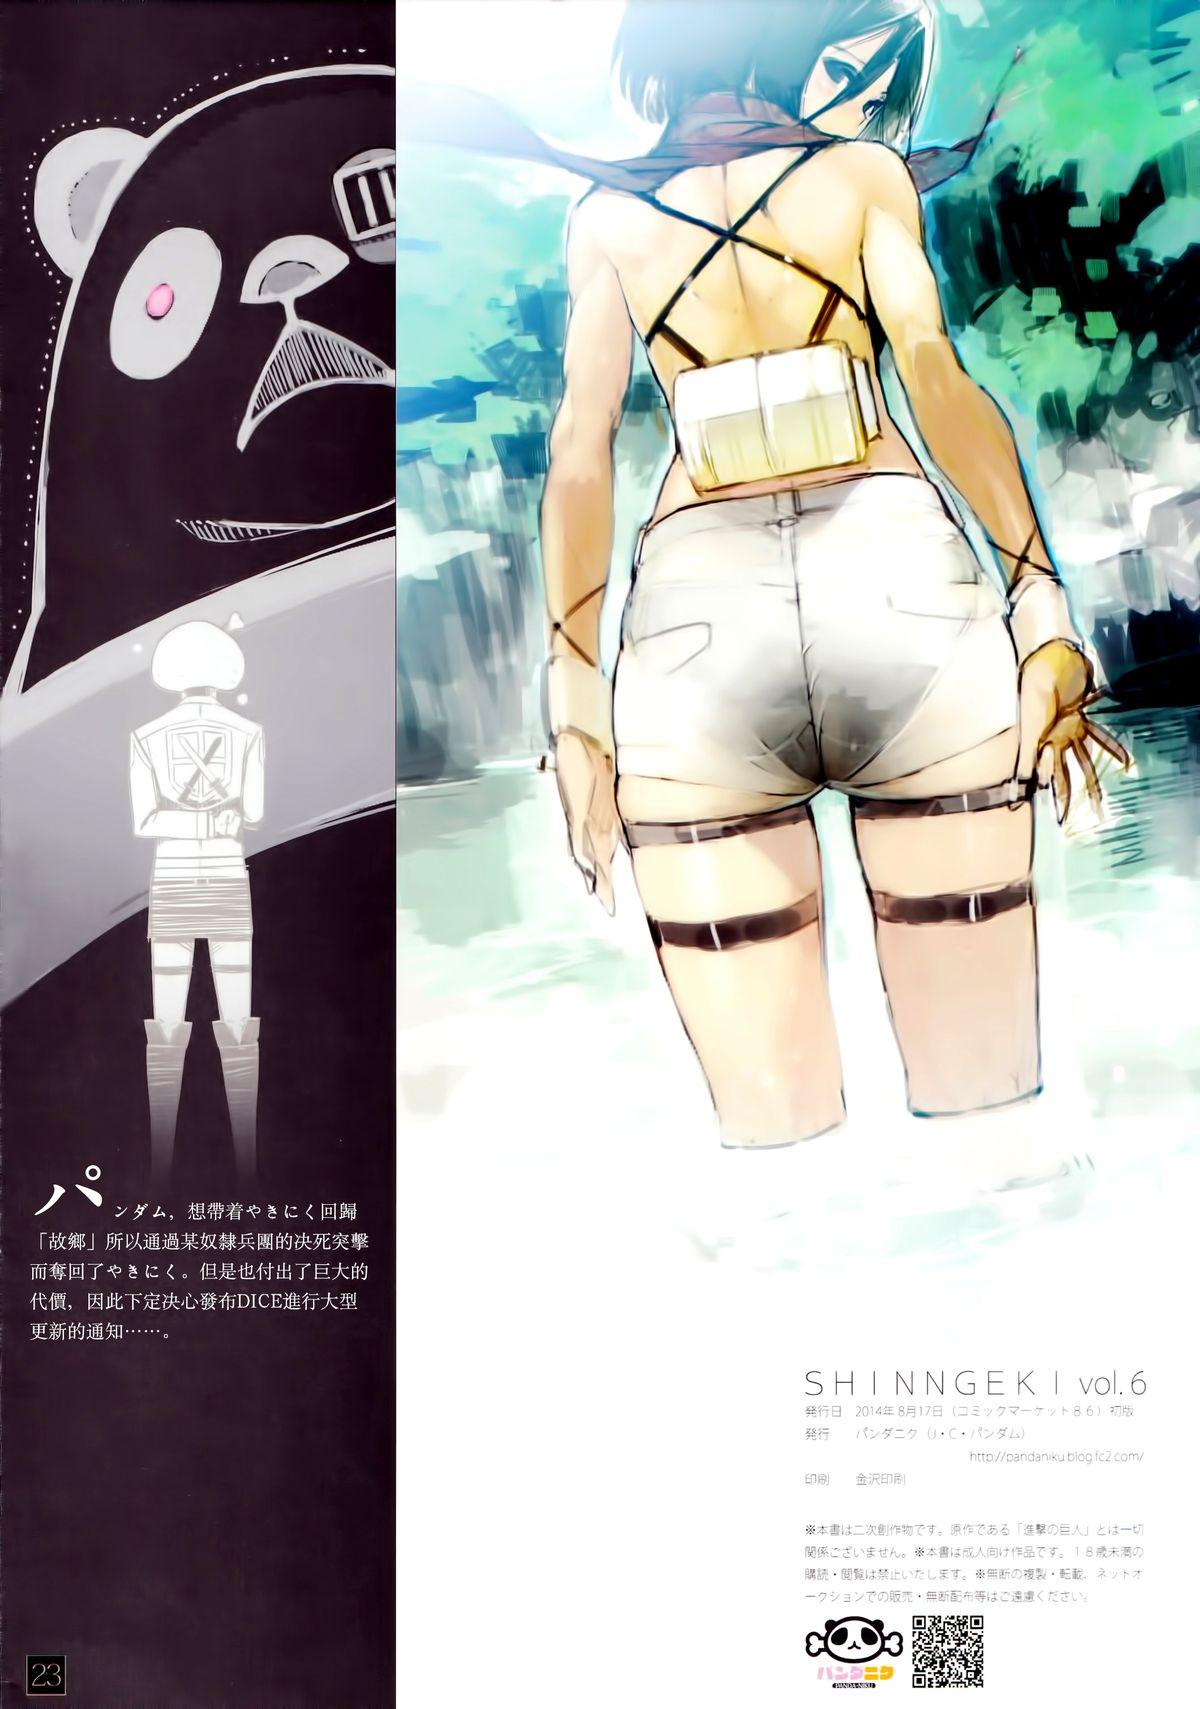 X SHINNGEKI Vol. 6 - Shingeki no kyojin Hermosa - Page 20